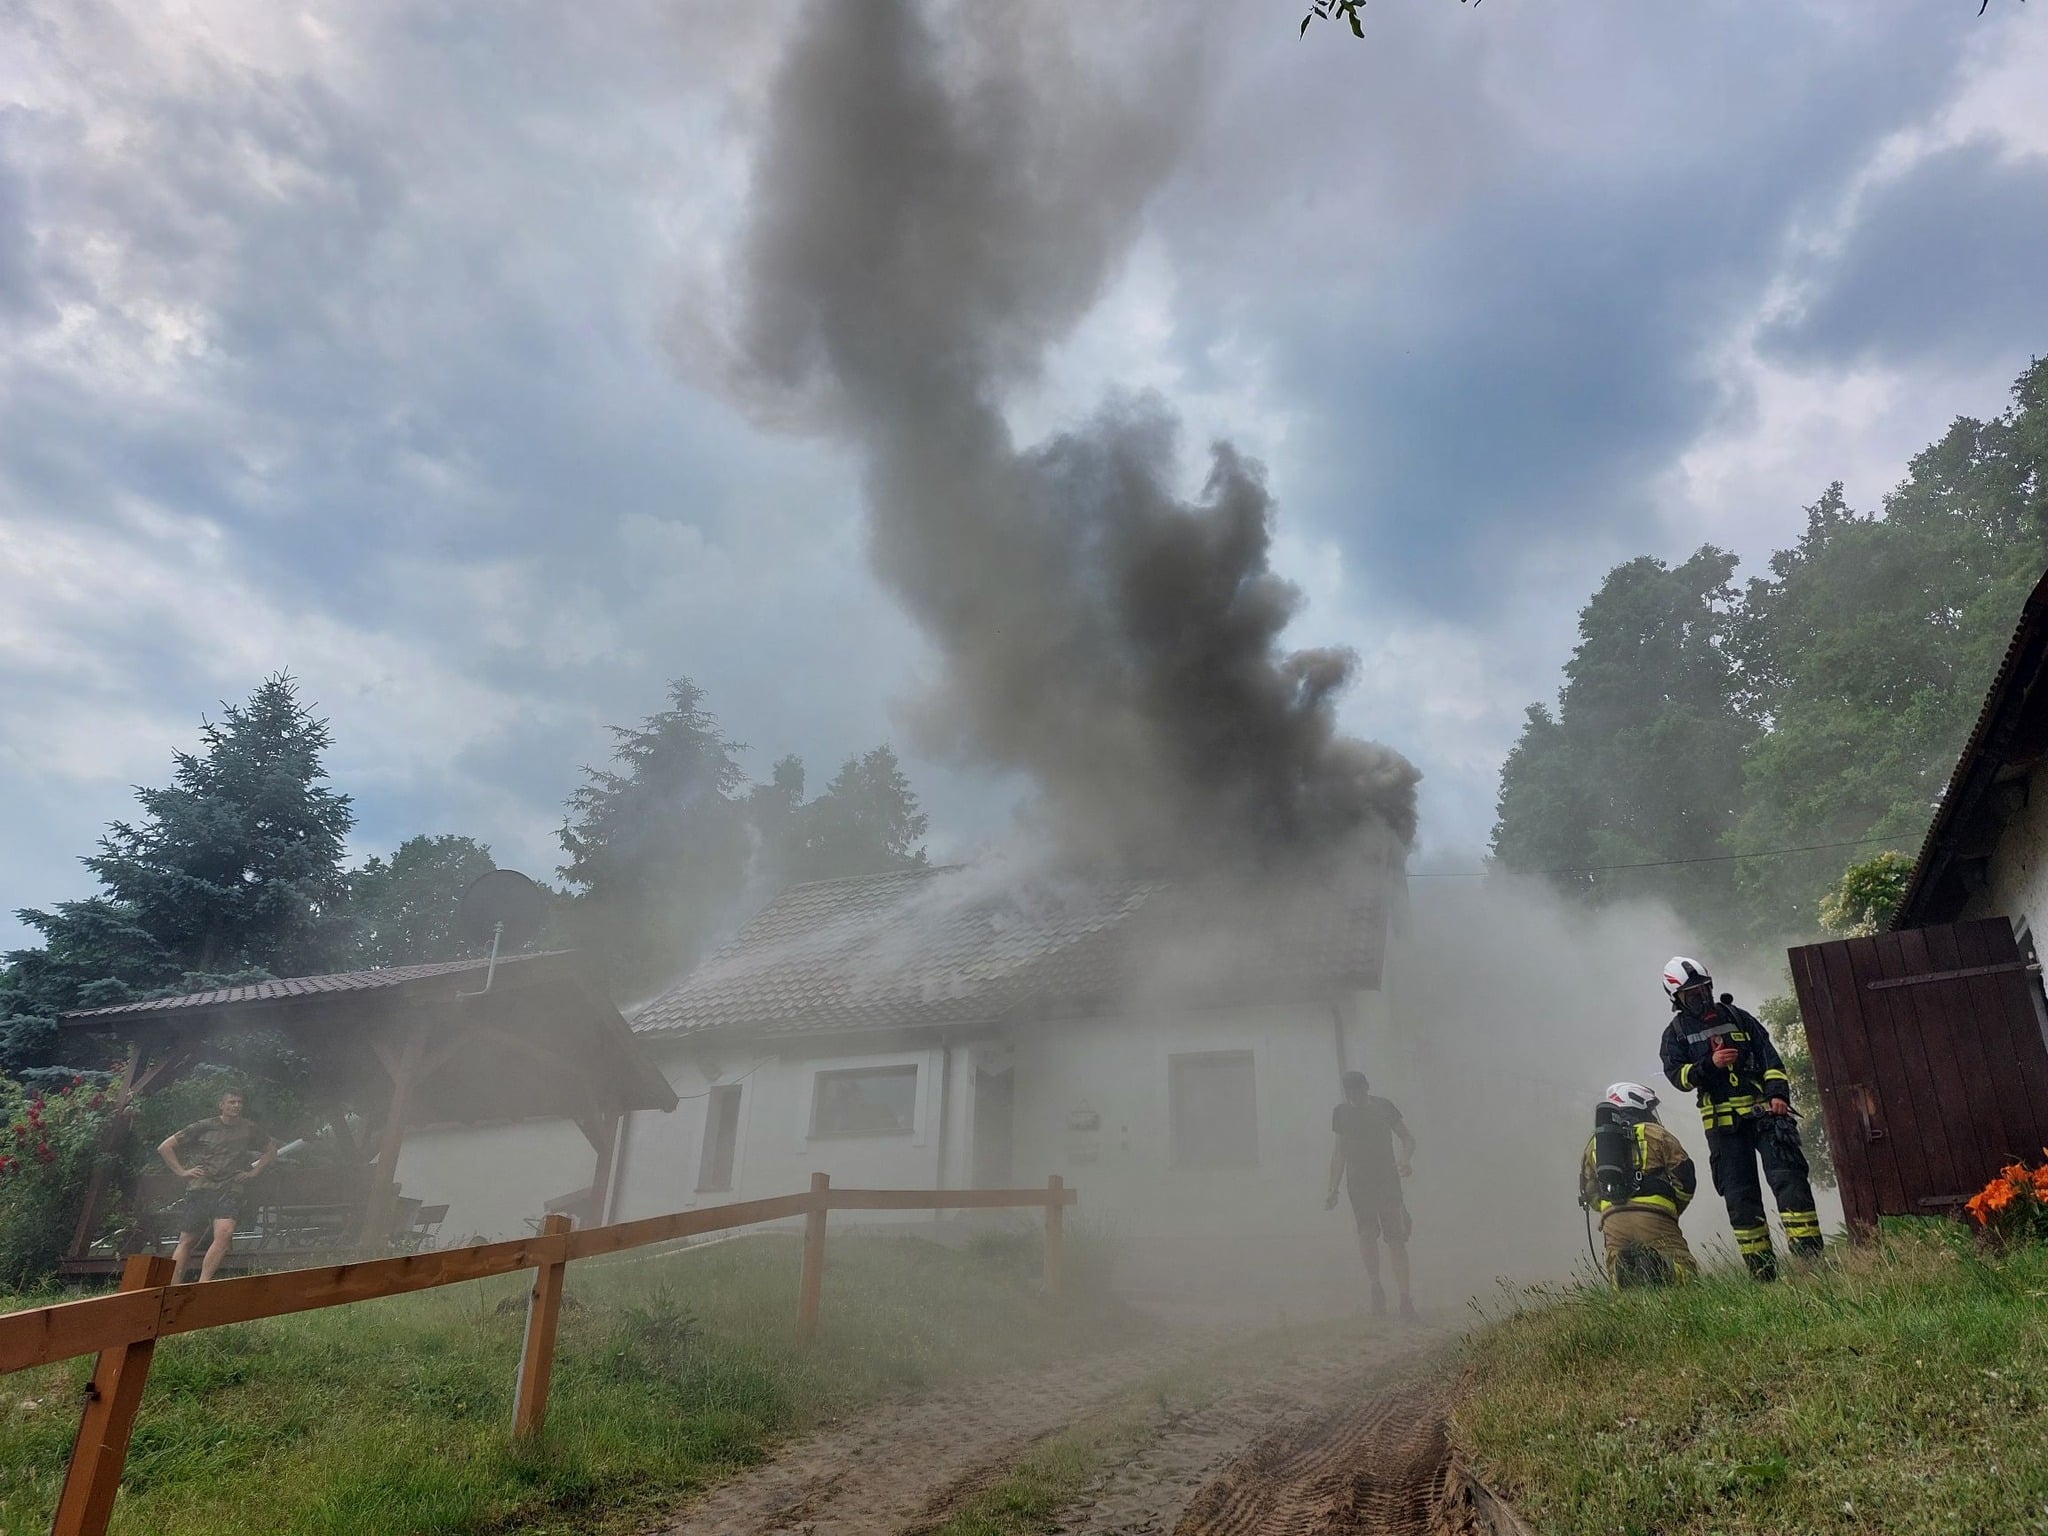 Walka z pożarem w gminie Stawiguda: żywioł zniszczył dom pożar Olecko, Wiadomości, zPAP, zShowcase